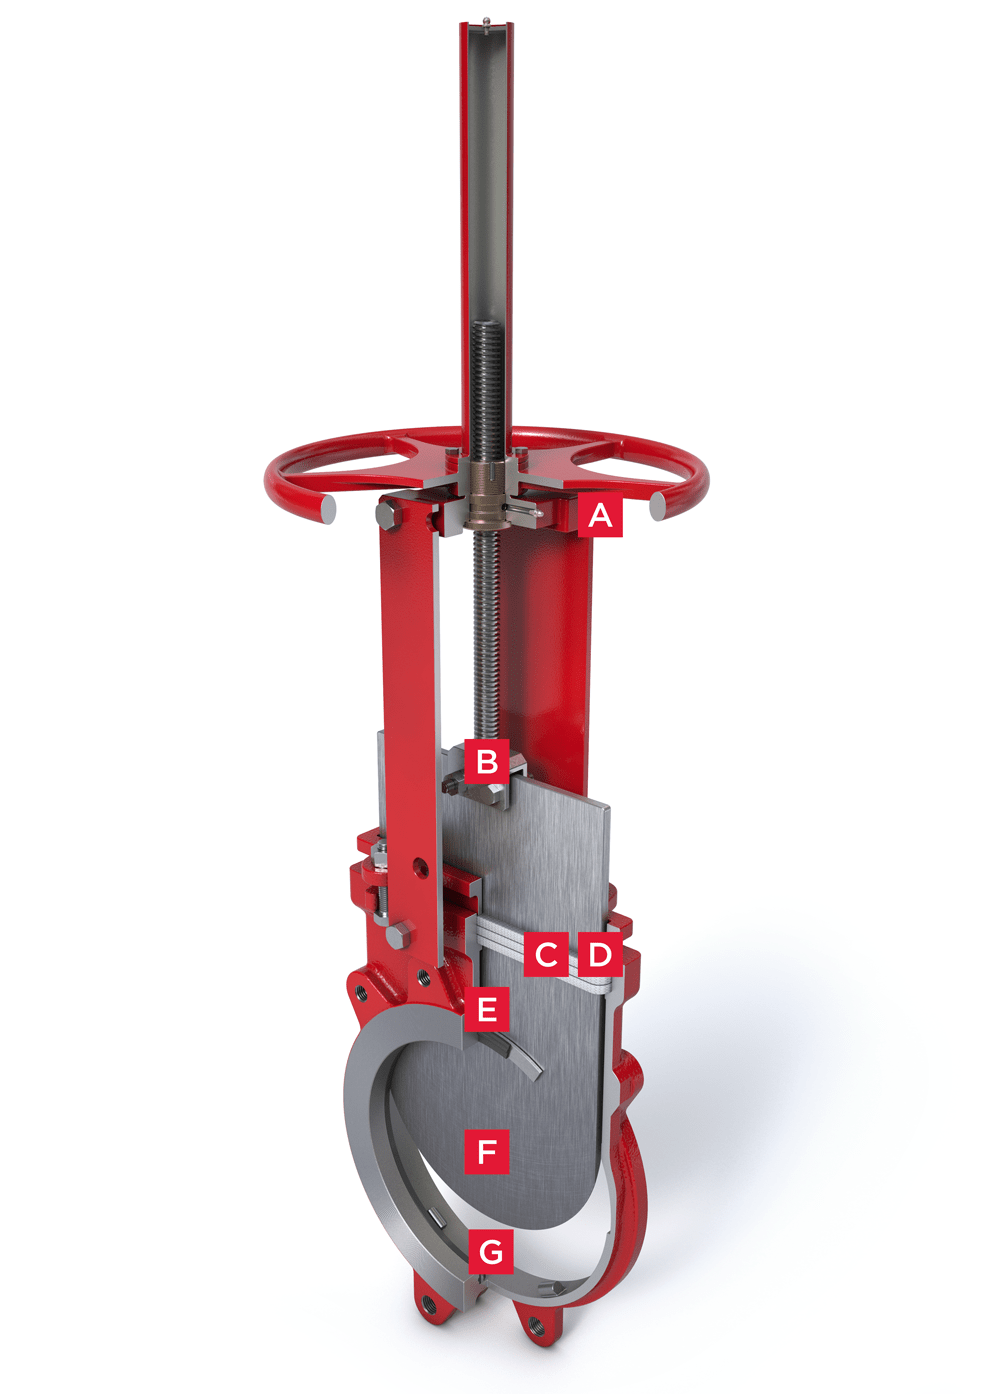 Válvula guillotina unidireccional de la Serie 950 de Bray International